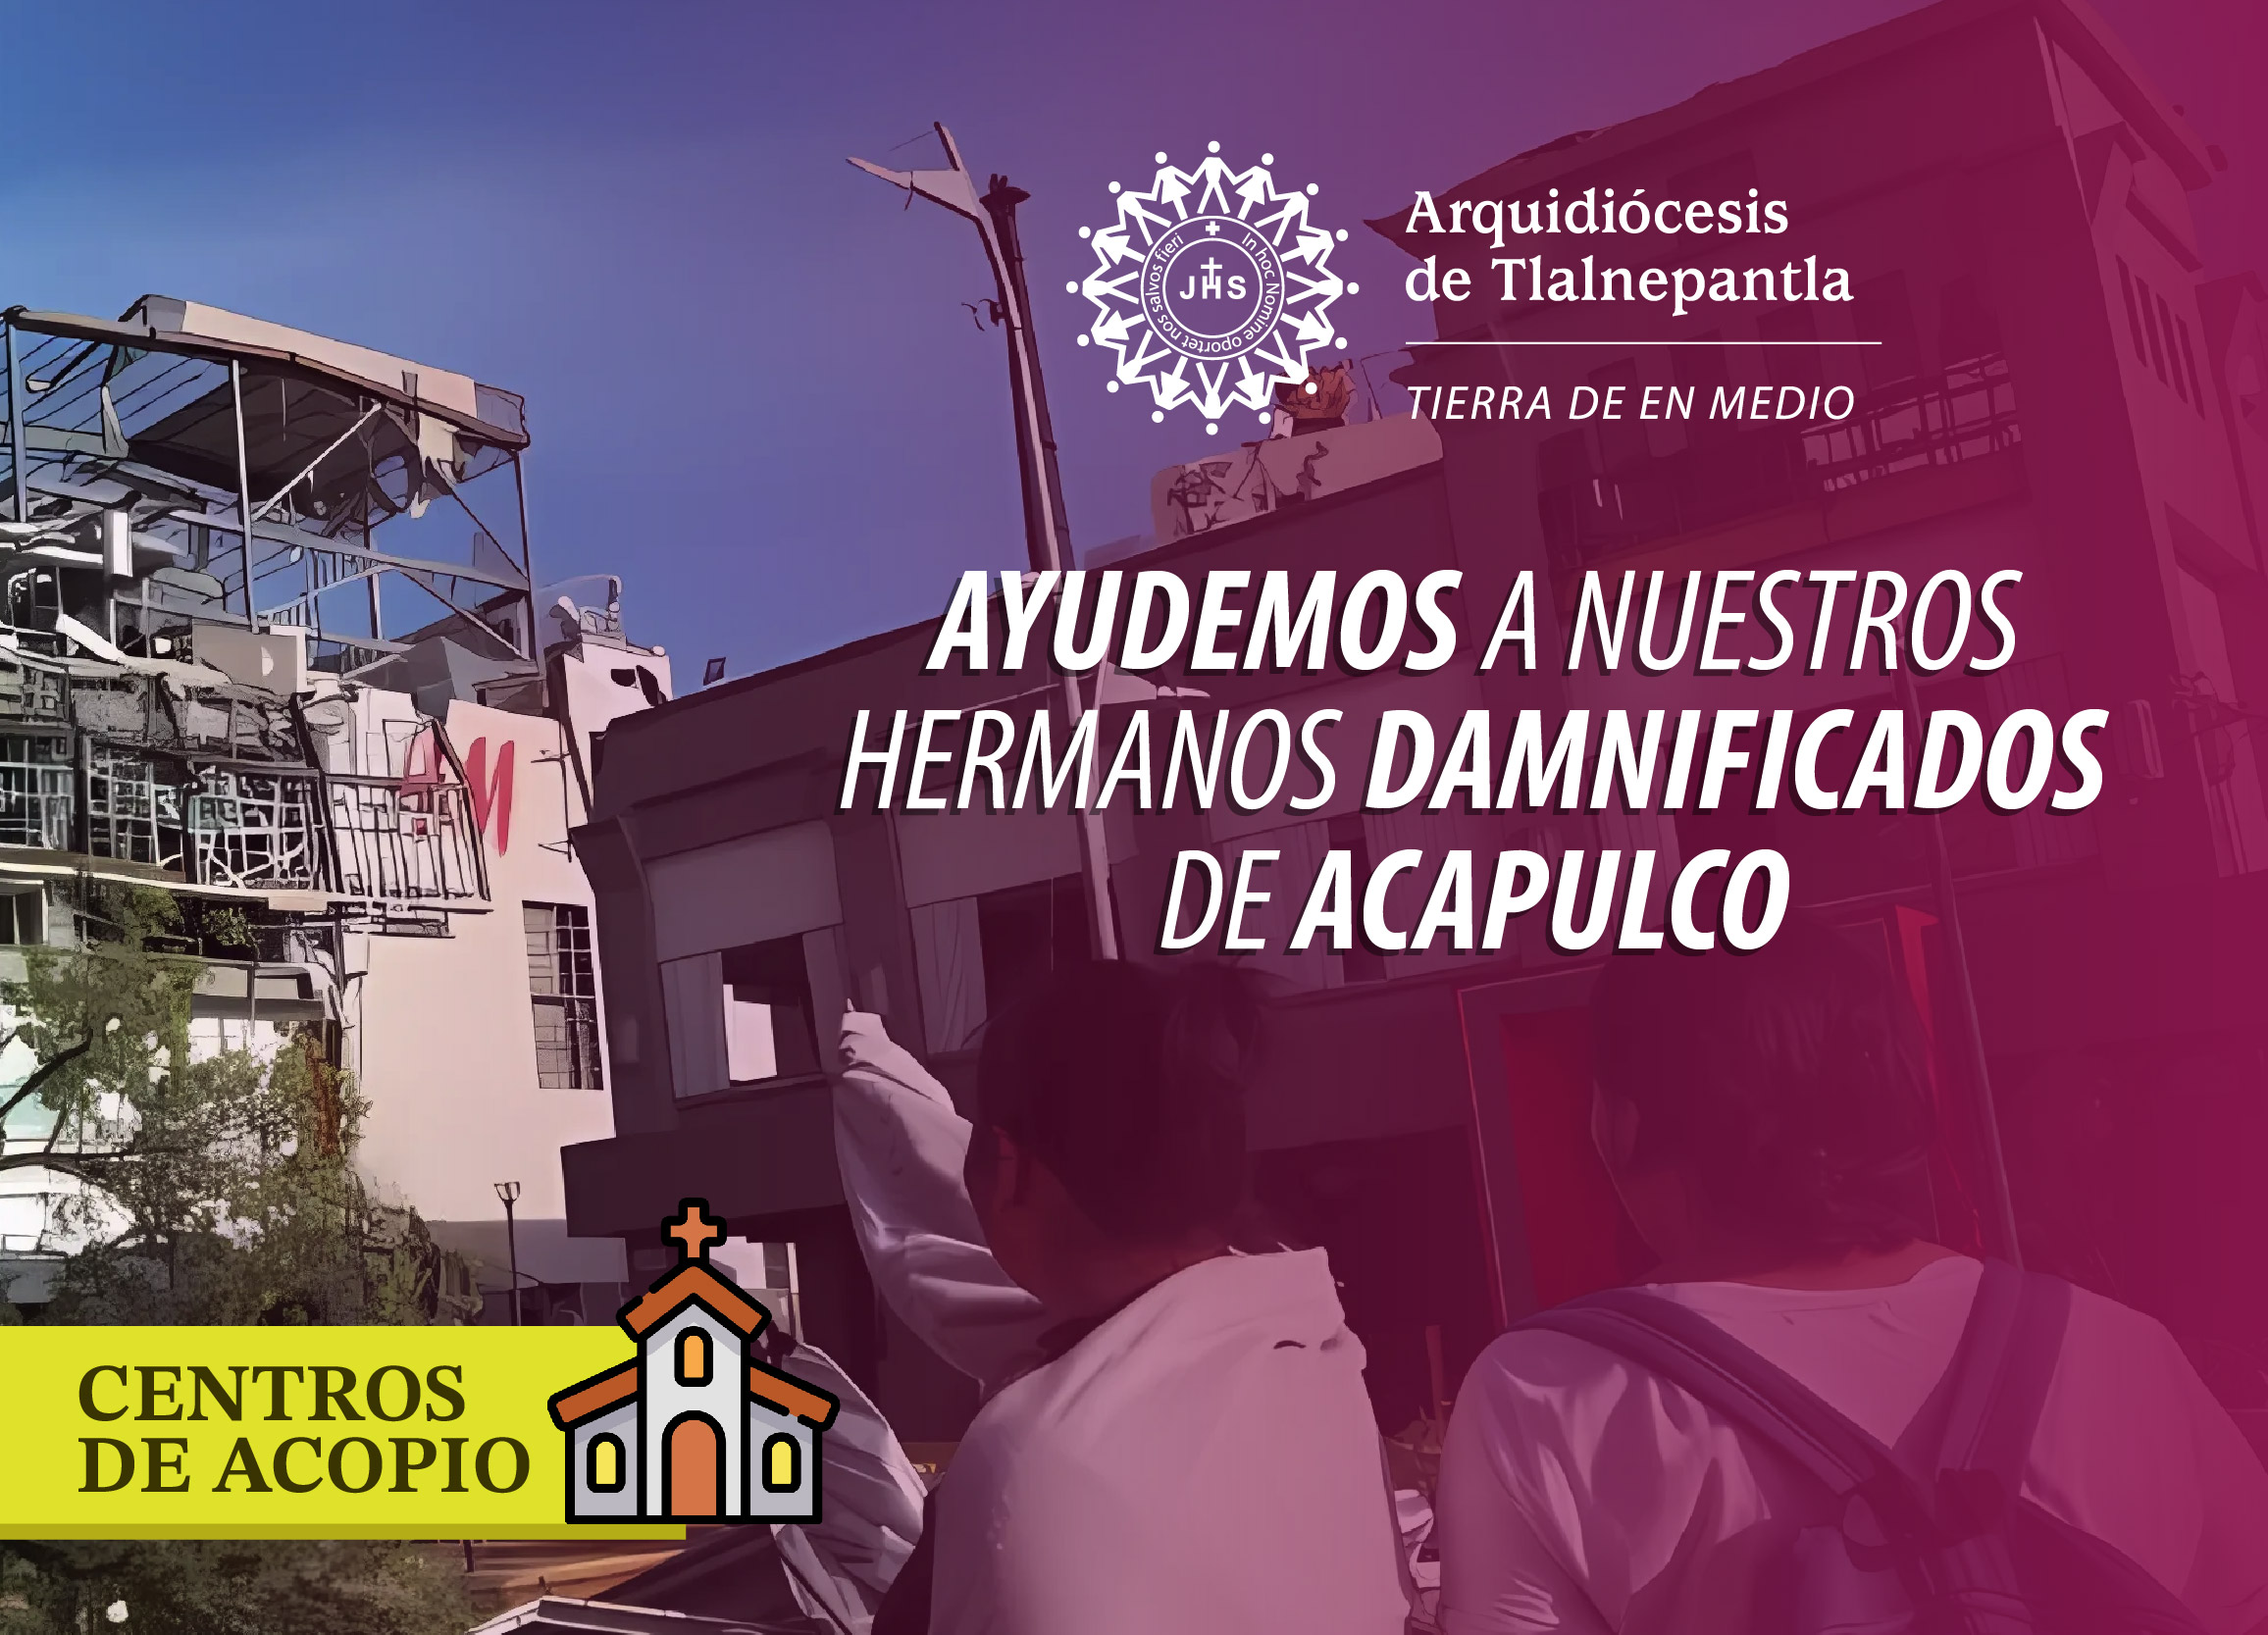 Ayudemos a nuestros hermanos damnificados de Acapulco